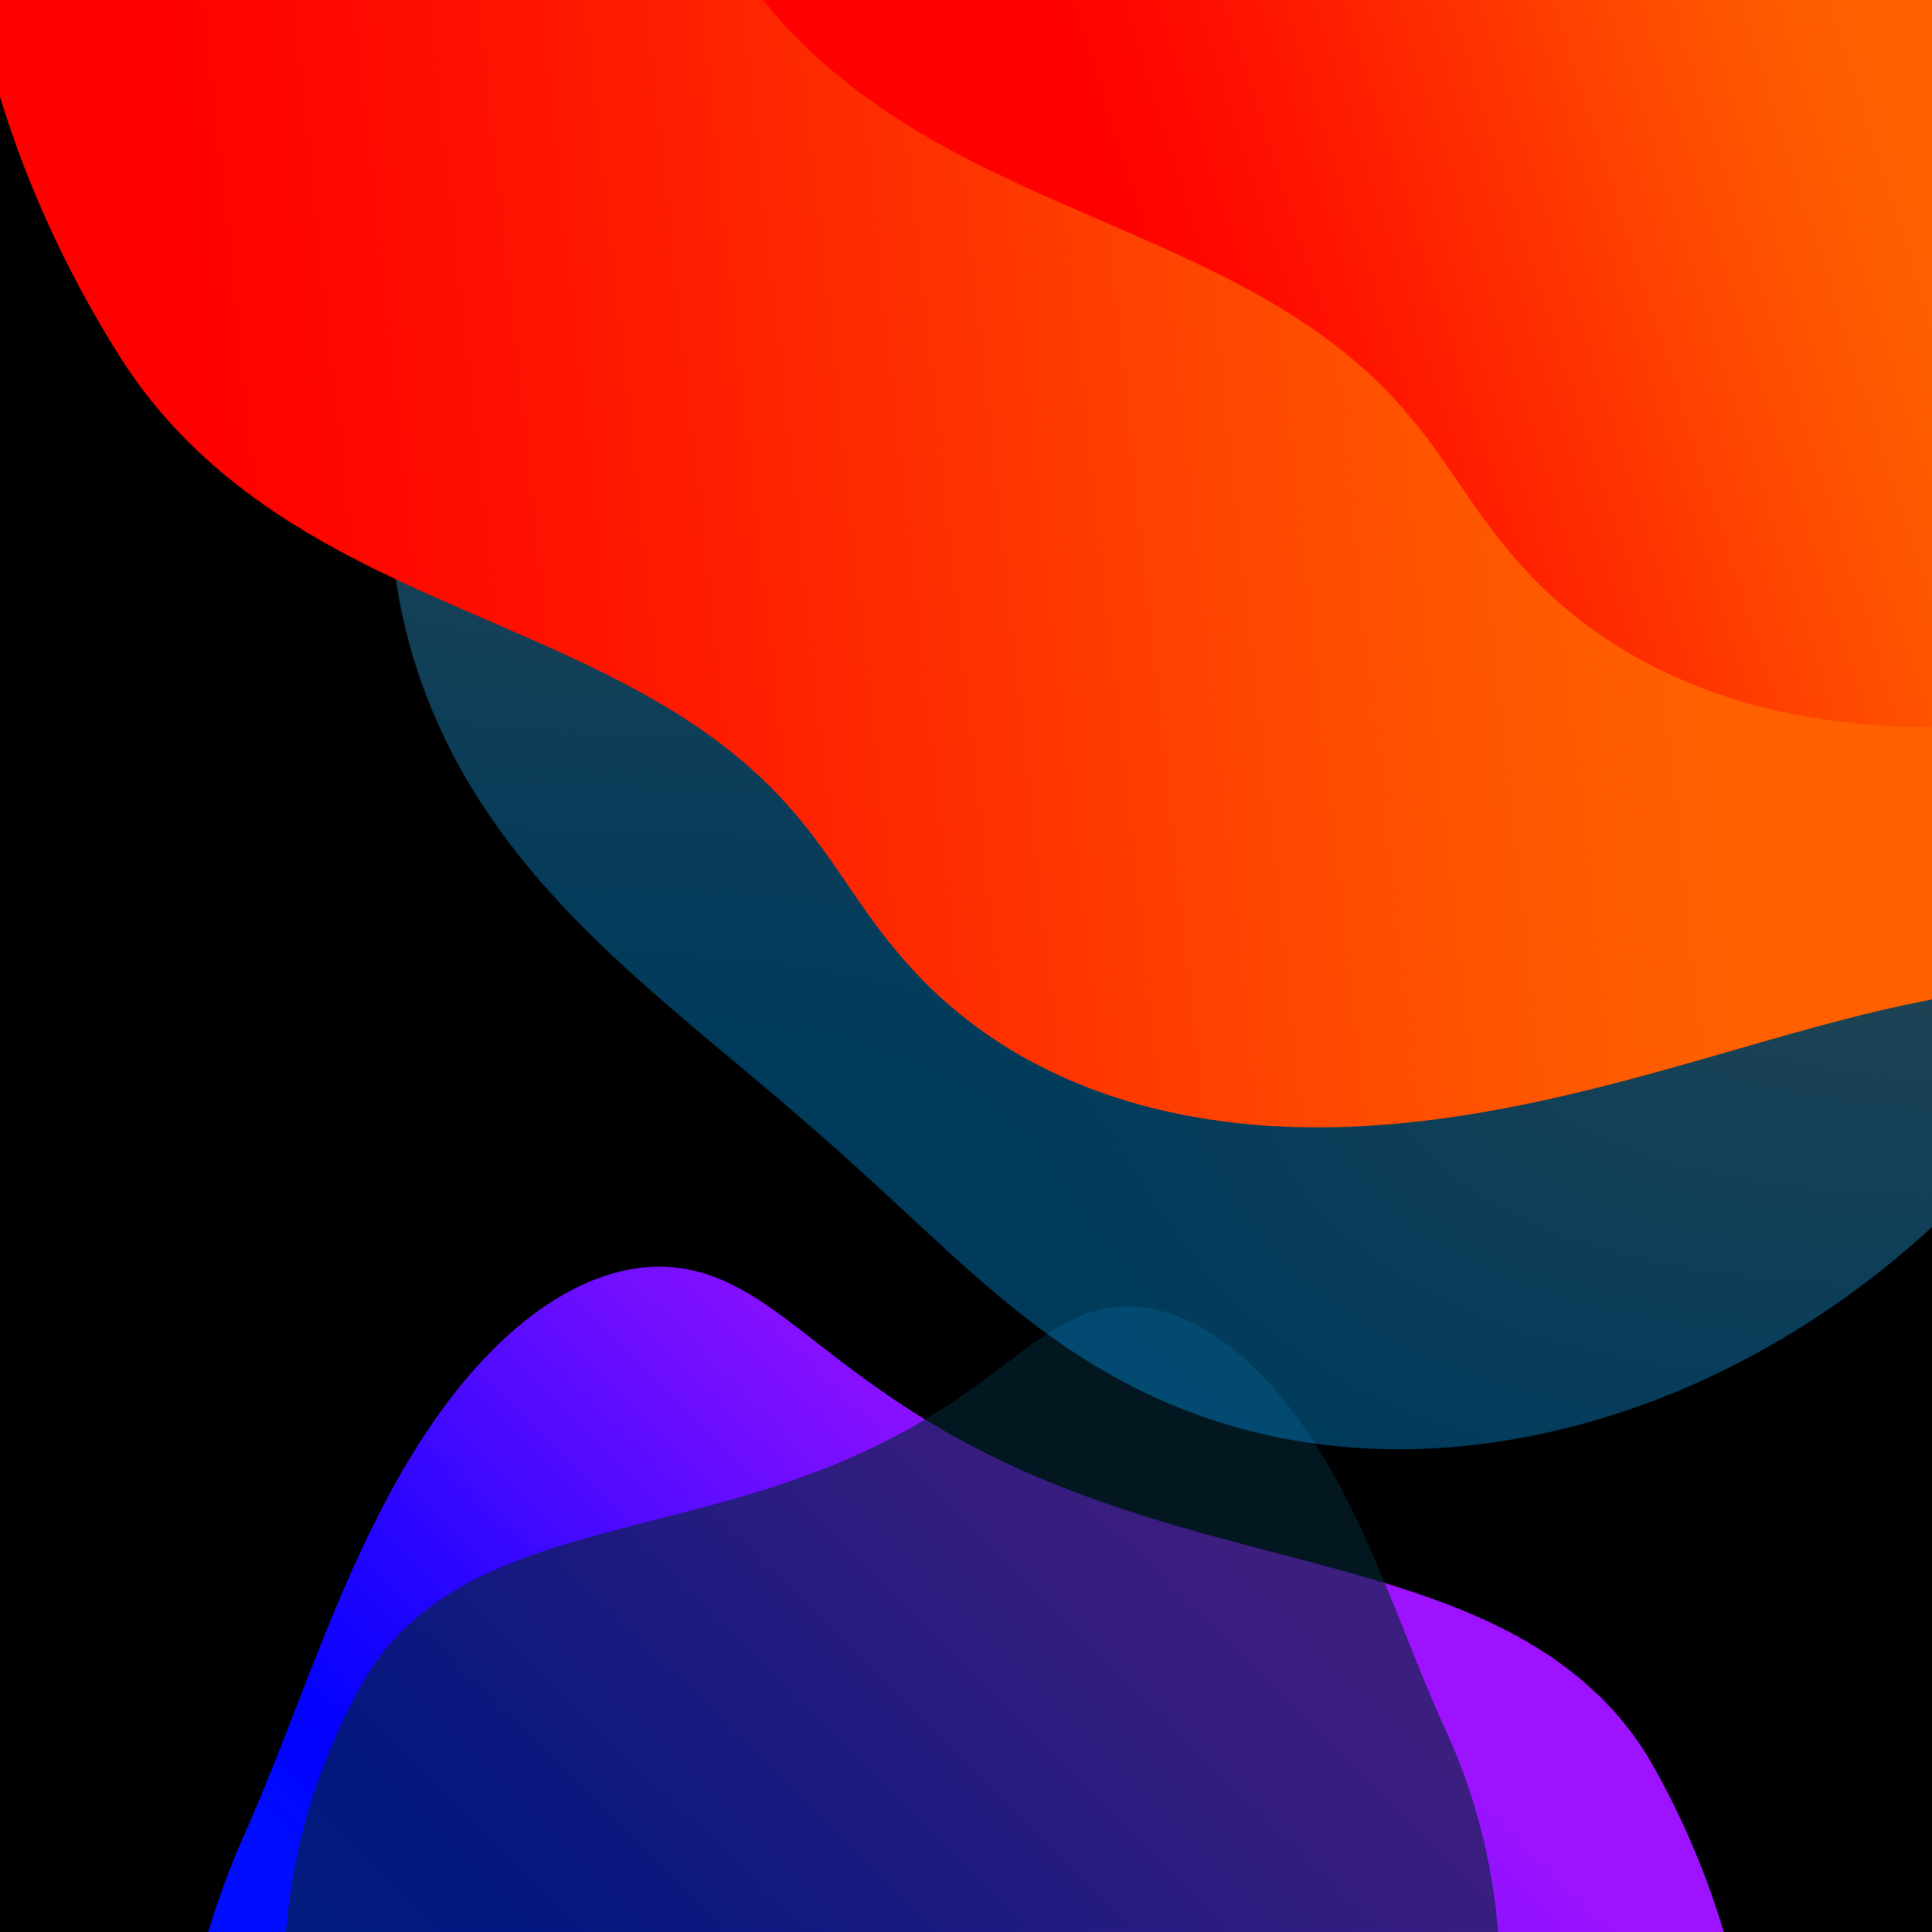 iOS 13 Wallpaper 4K, Stock, Multicolor, Gradients, #796